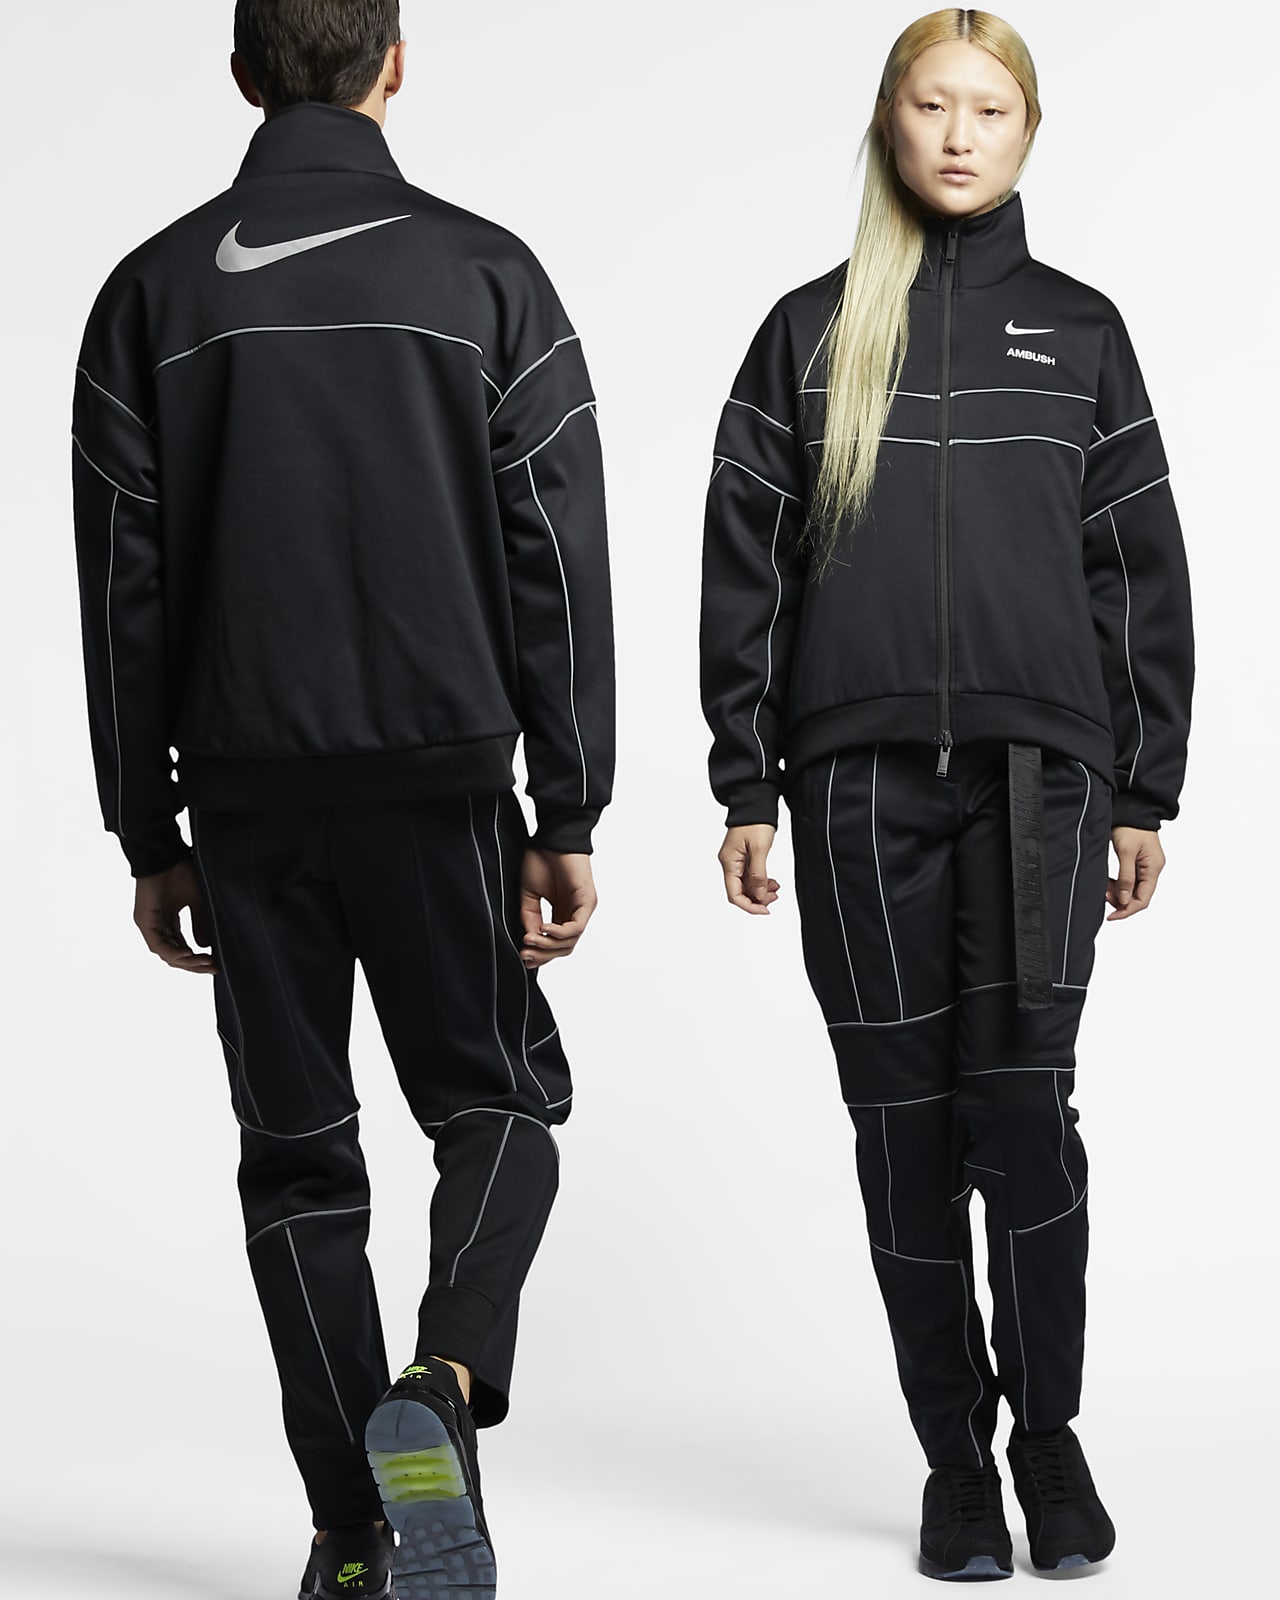 Nike x Ambush 女款雙面外套。Nike TW